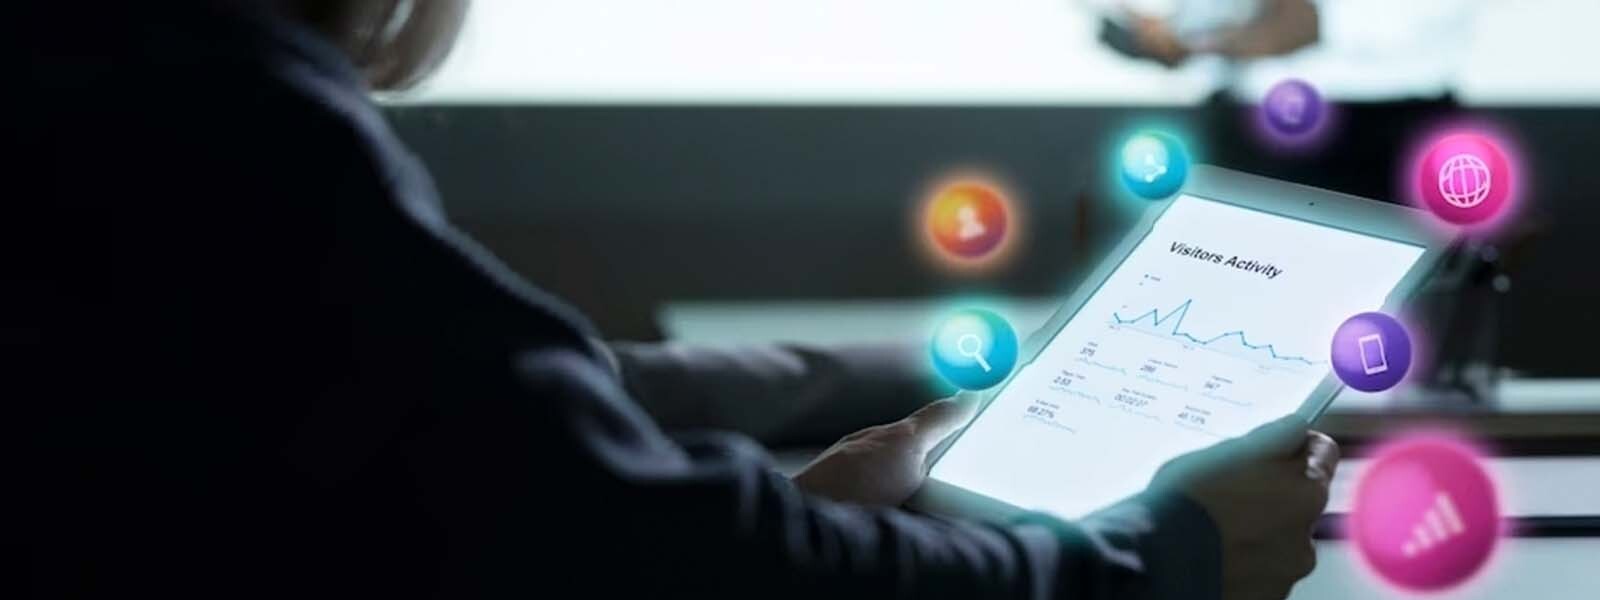 Persona sostiene una tablet en sus manos, dentro de la cual se visualiza un panel estadístico y varios iconos de marketing animados salen arriba de la tablet.